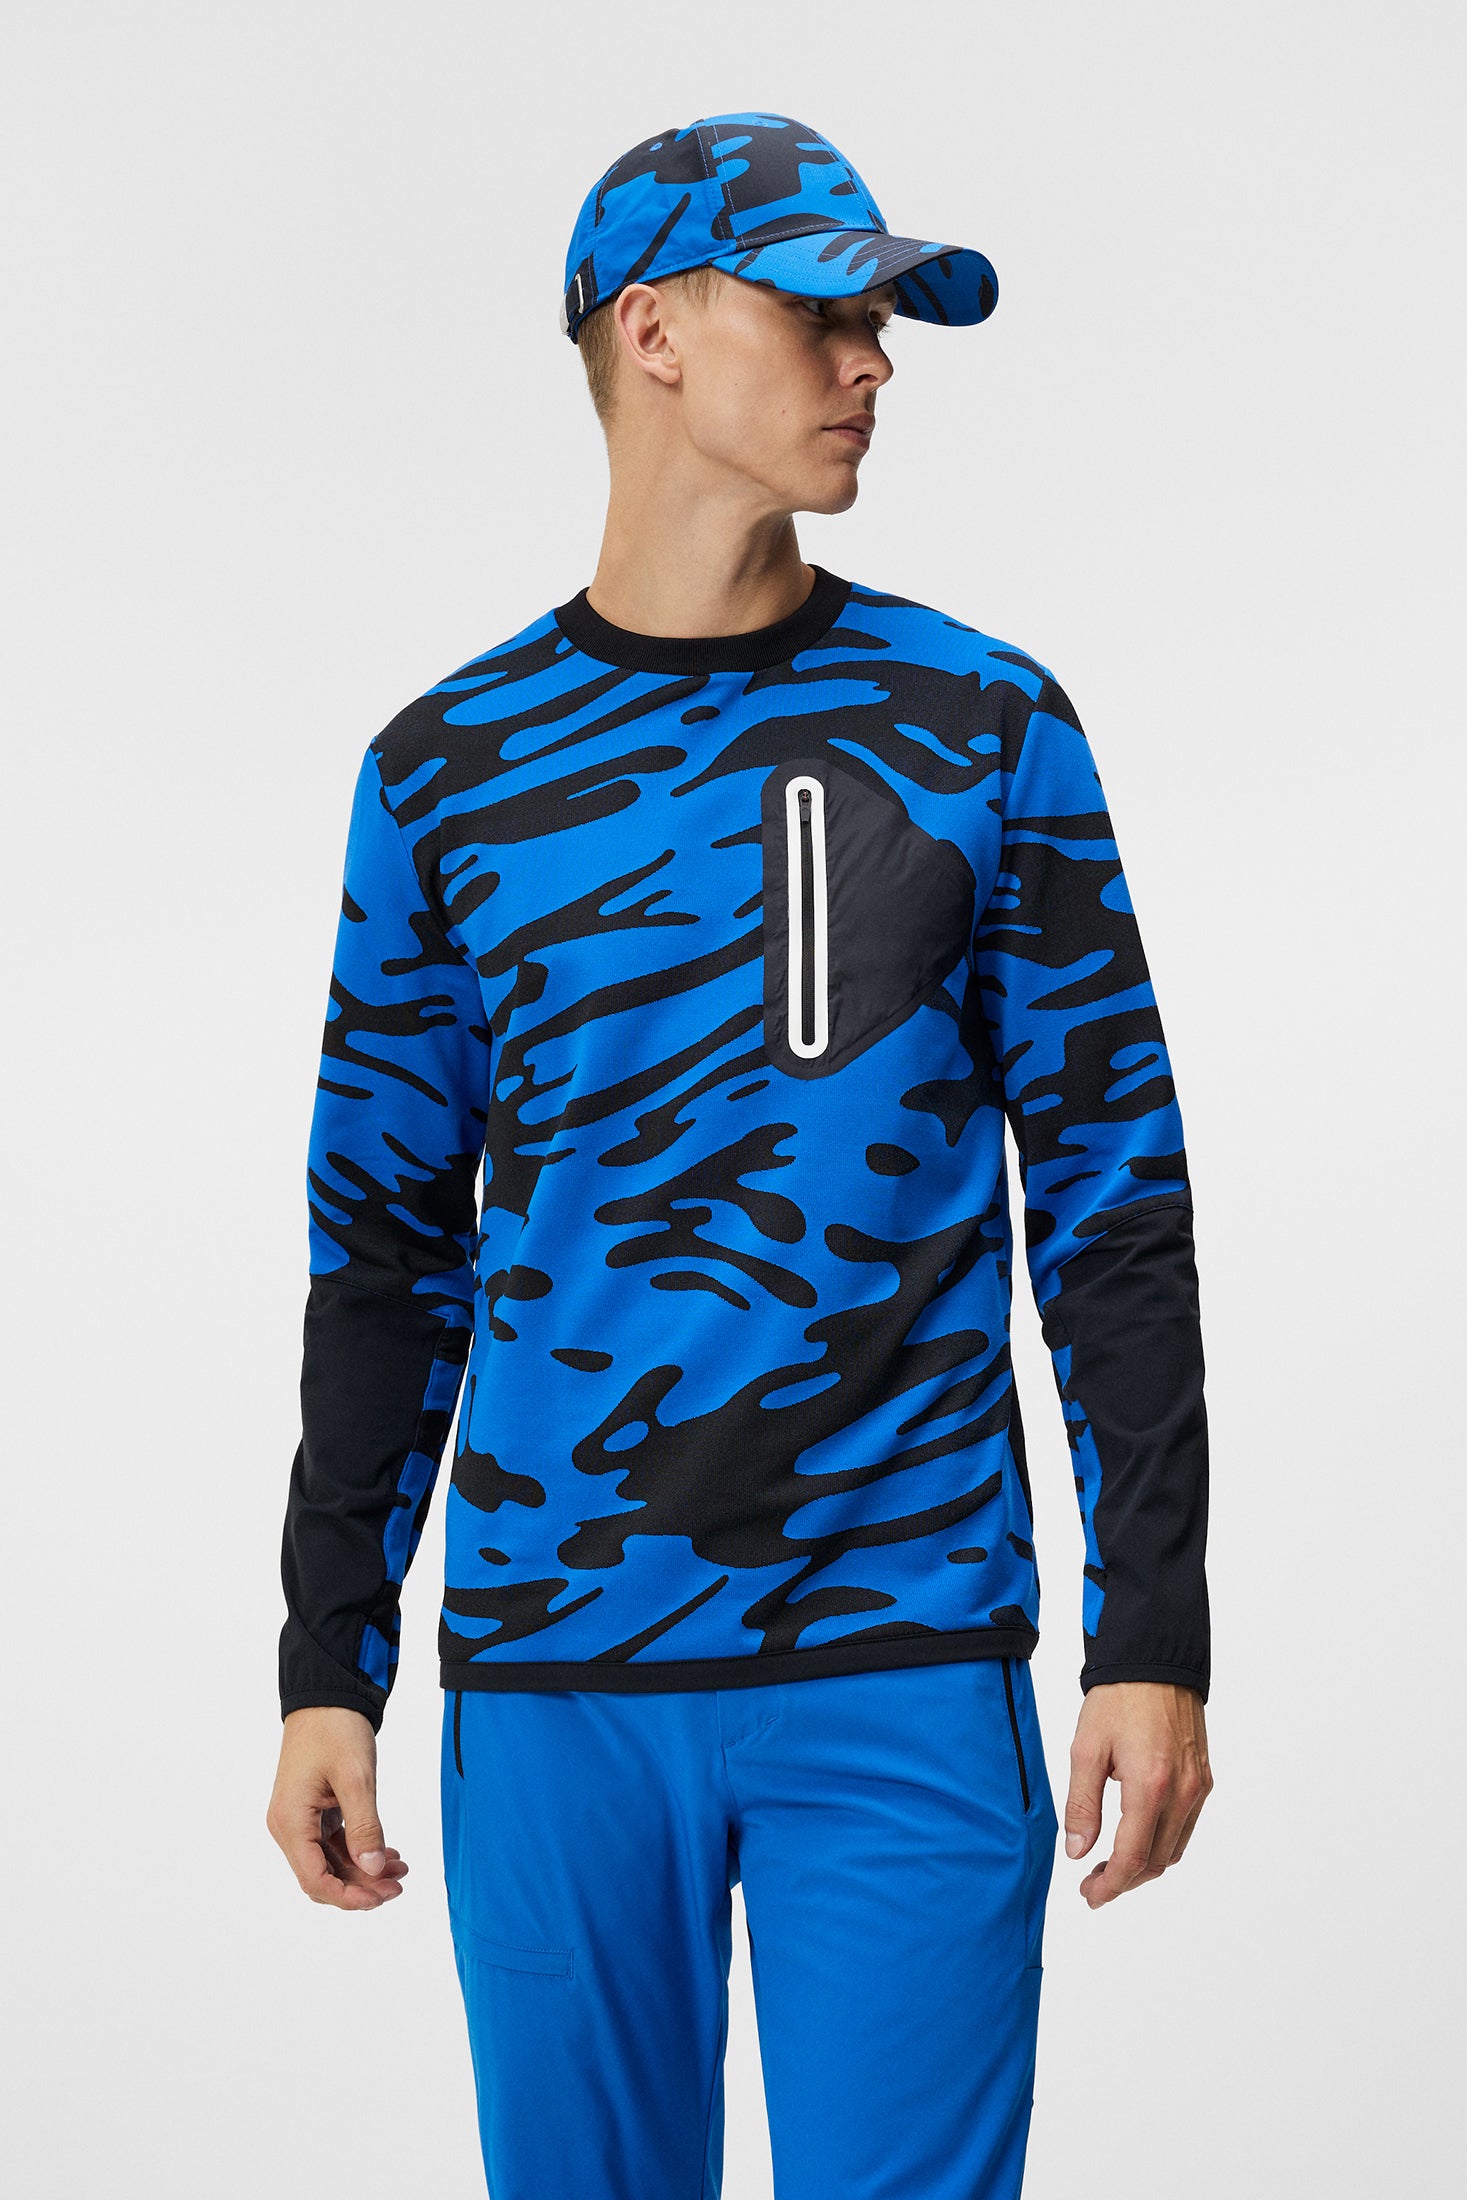 제이린드버그 J.LINDEBERG Alonso Jacquard Sweatshirt,Neptune Nautical Blue